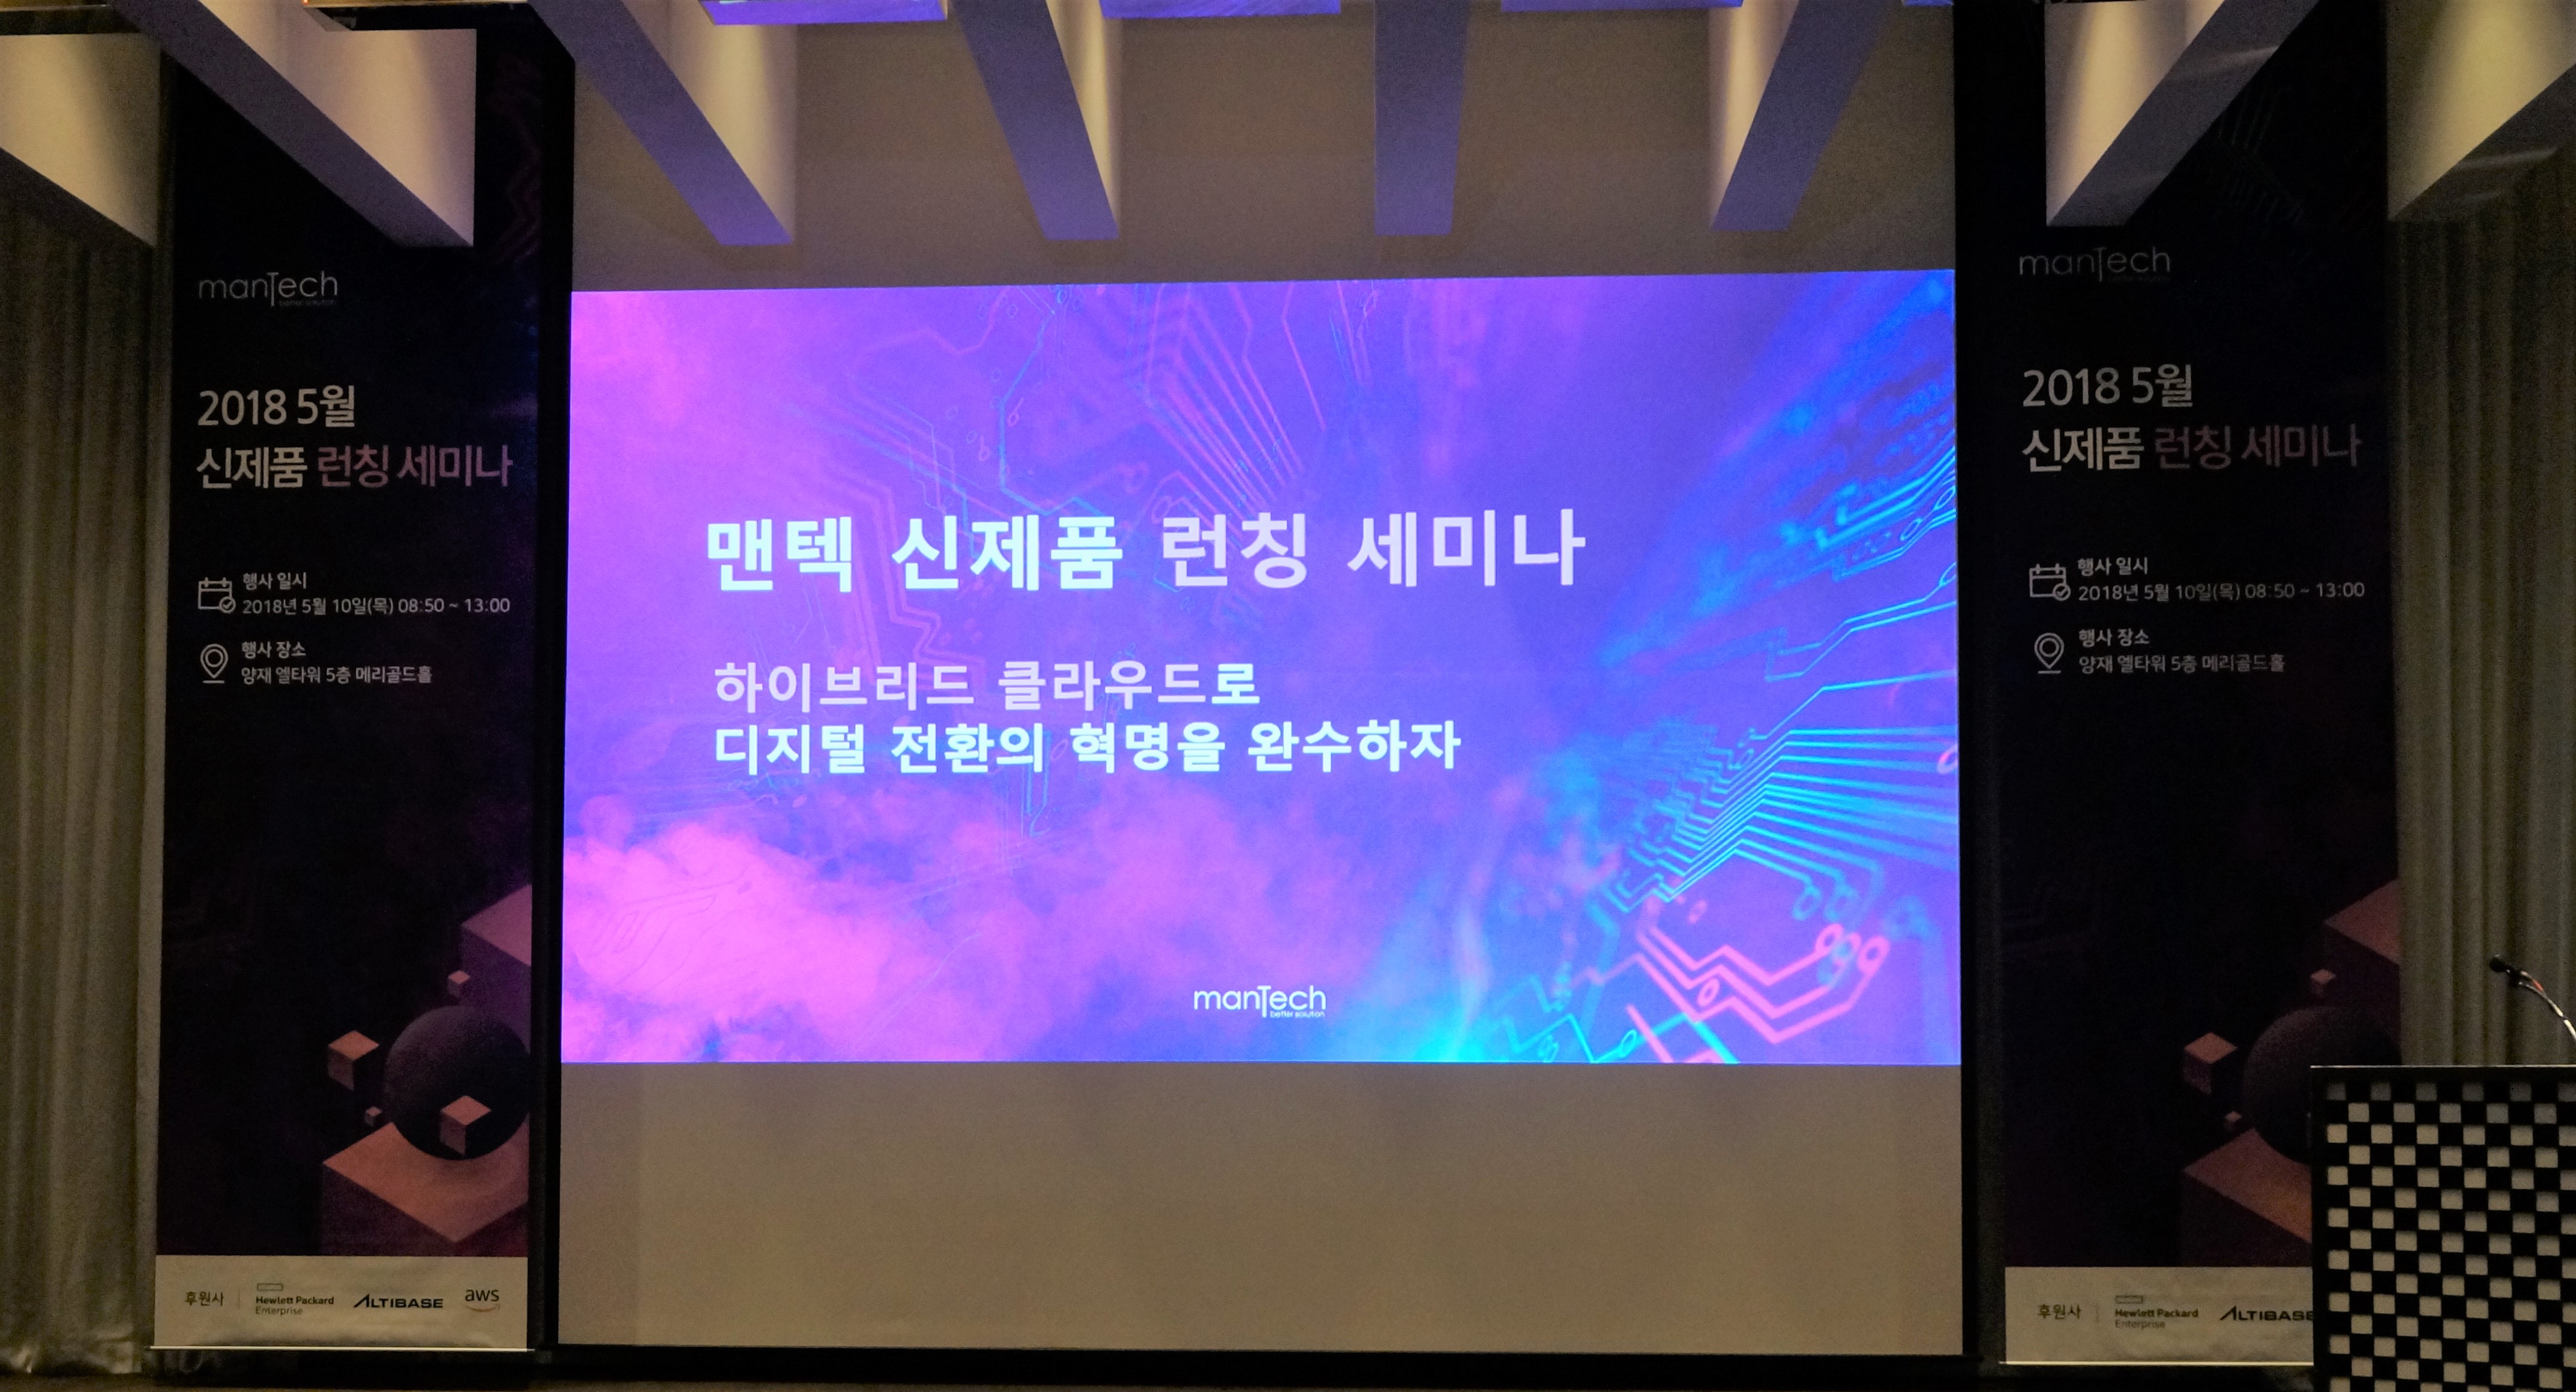 맨텍 2018 신제품 런칭 세미나 성황리 개최